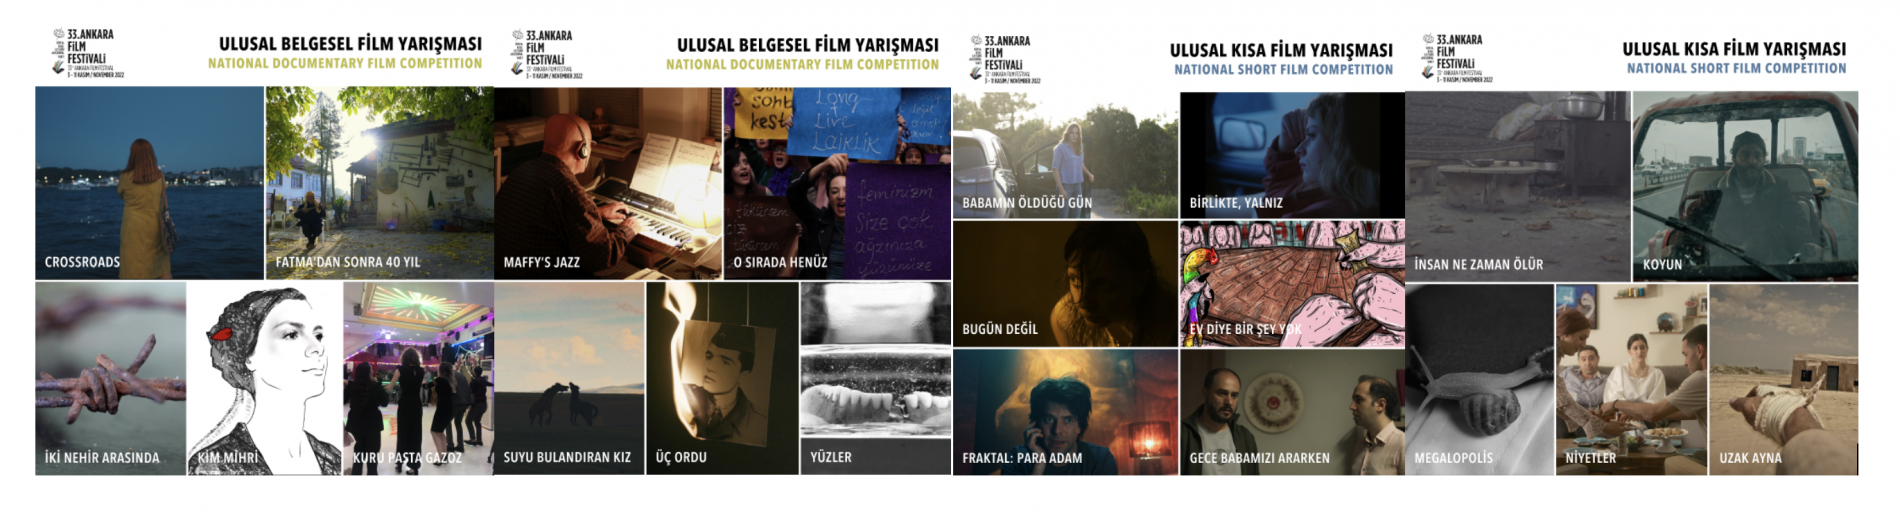 33. Ankara Film Festivali'nde Yarışacak Ulusal Kısa ve Belgesel Film ile Proje Geliştirme Finalistleri Belli Oldu